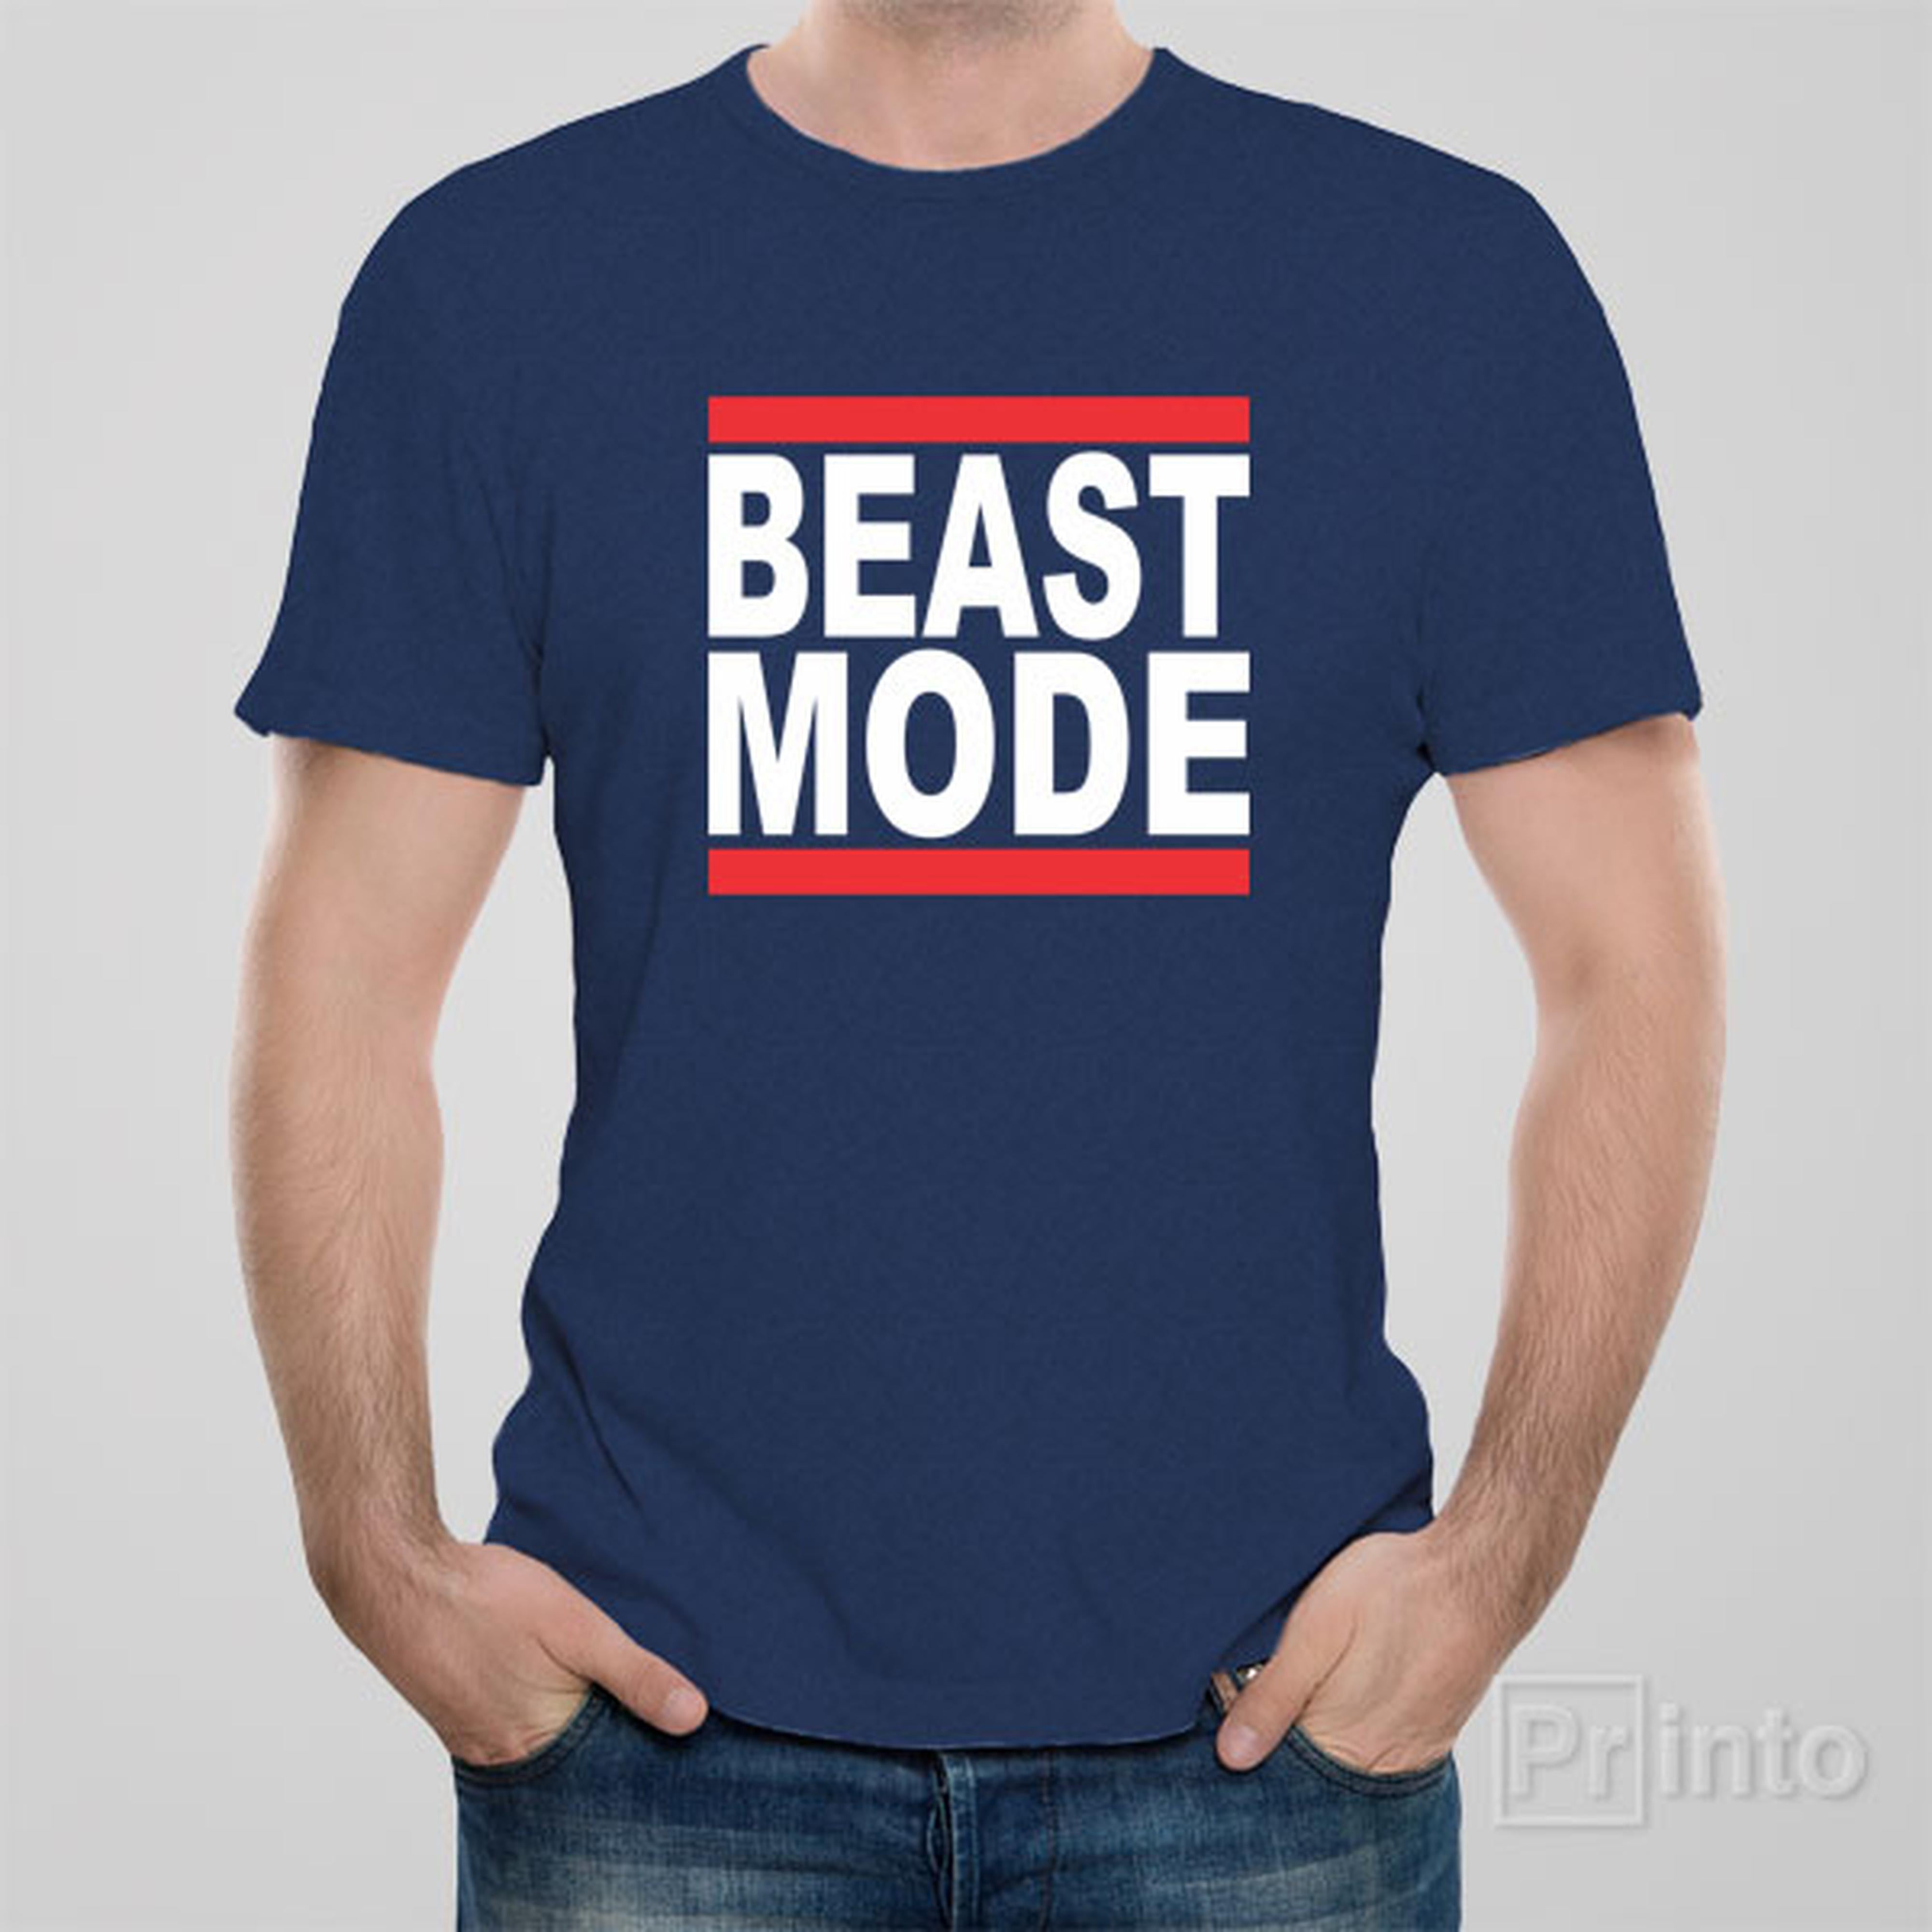 beast-mode-t-shirt